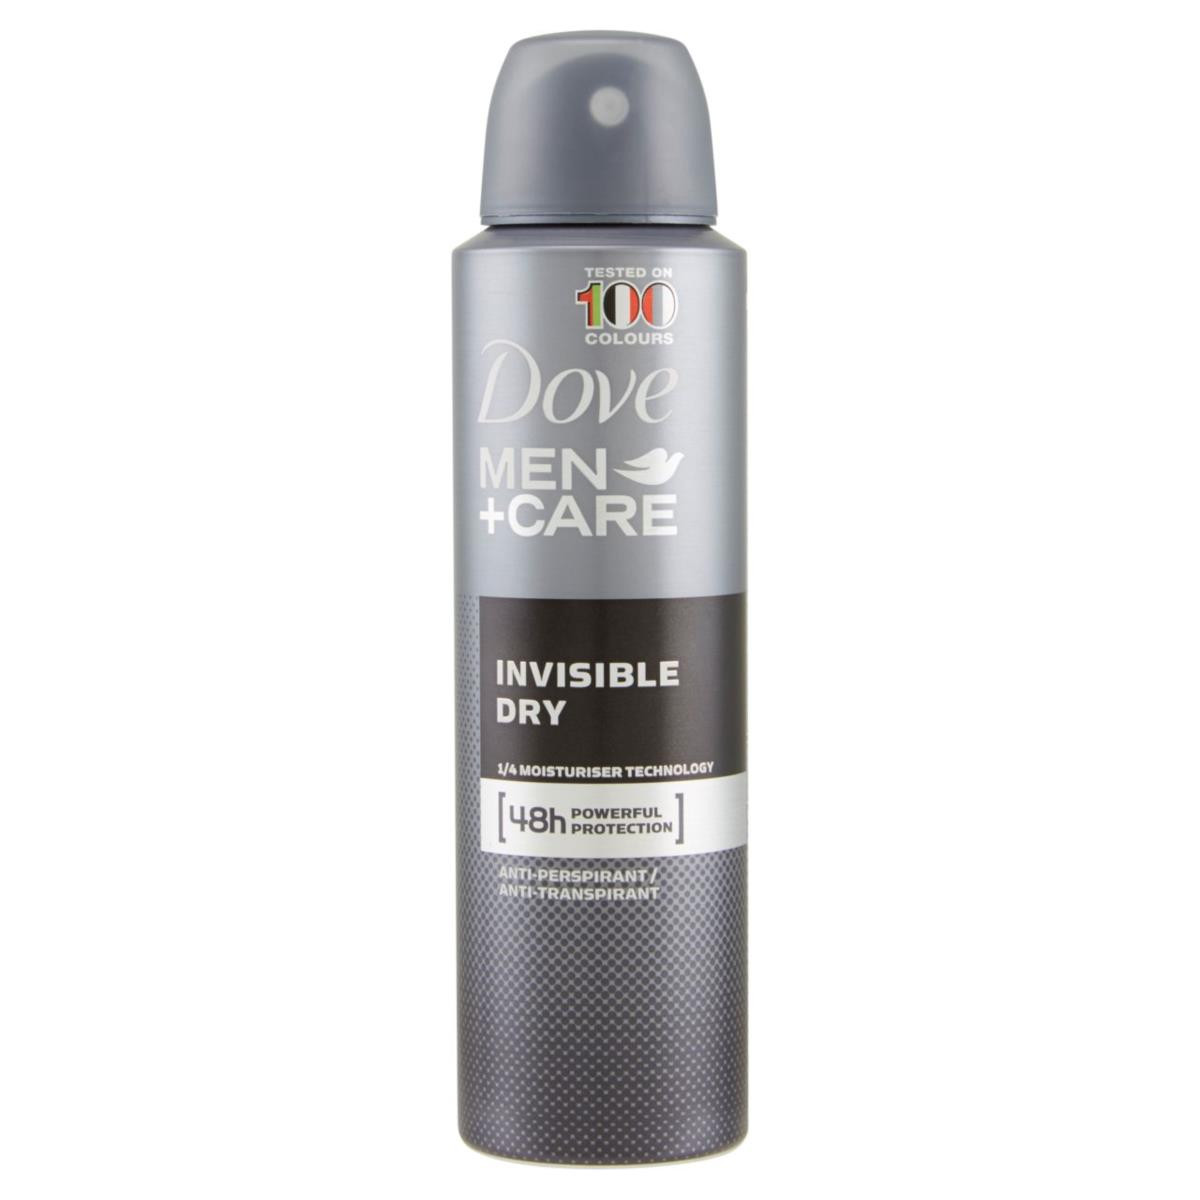 Dove deodorante Man+care Invisible Dry